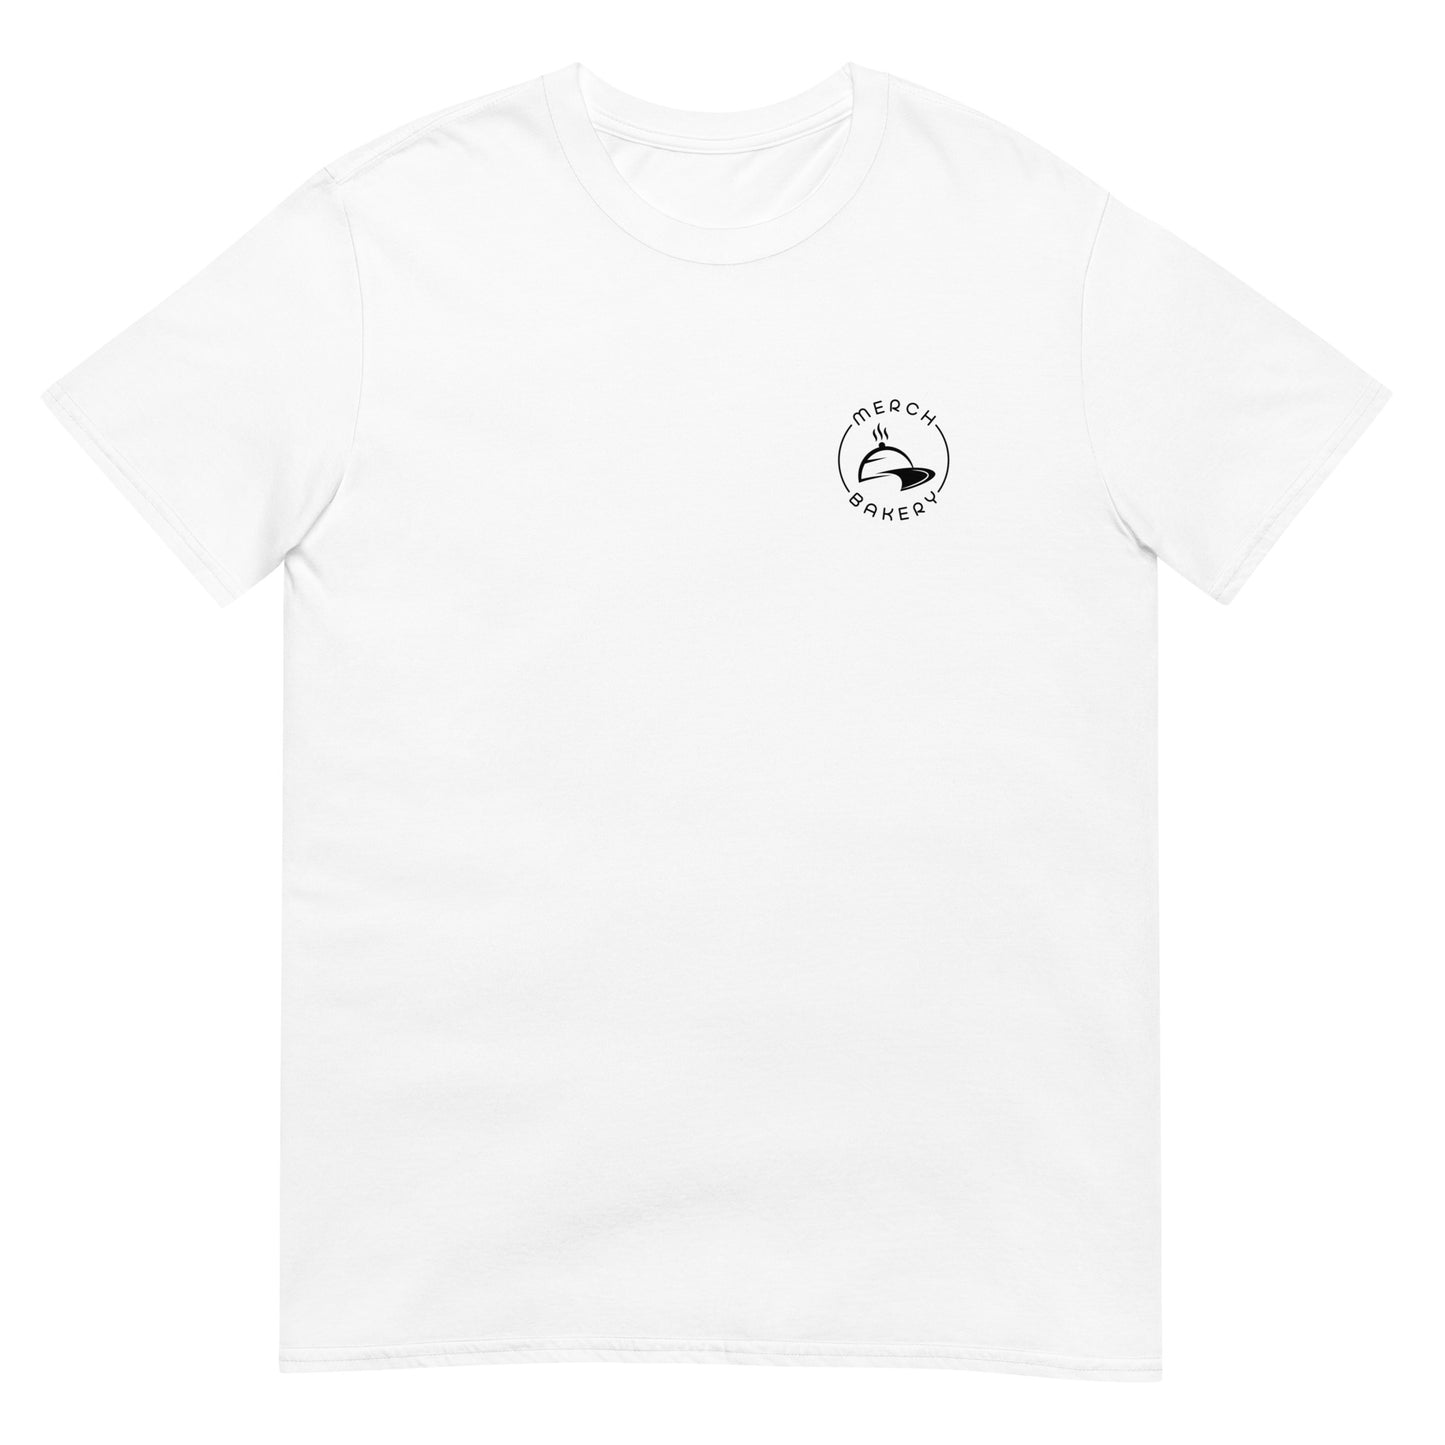 LOGO Rnd: Offizielles MERCH BAKERY T-Shirt - Unisex